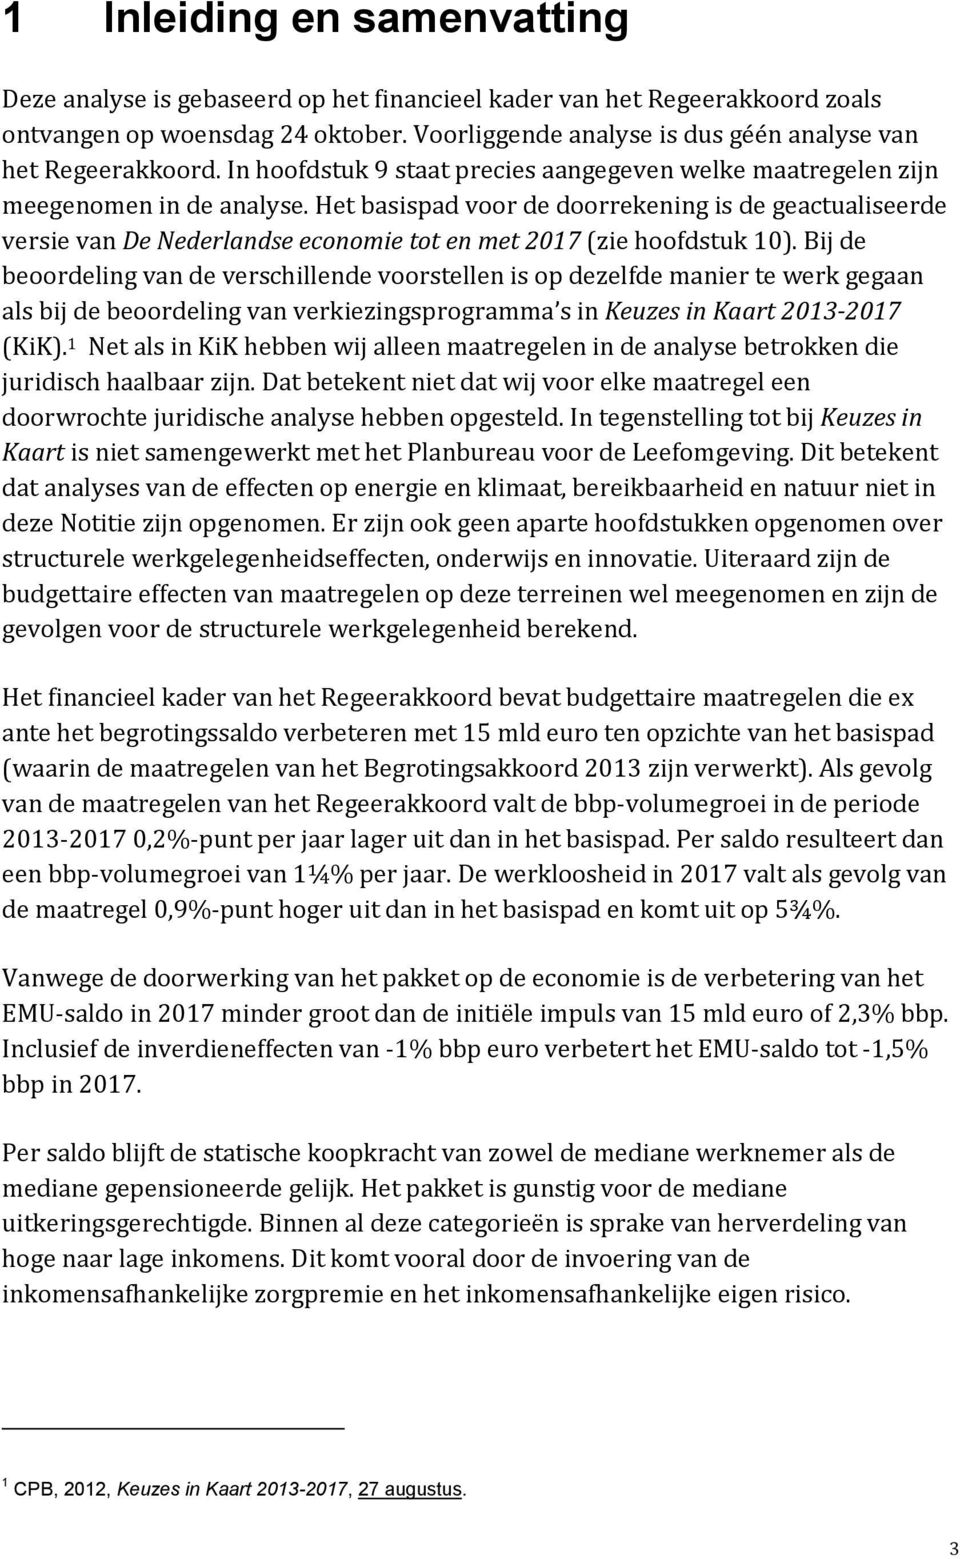 Het basispad voor de doorrekening is de geactualiseerde versie van De Nederlandse economie tot en met 2017 (zie hoofdstuk 10).